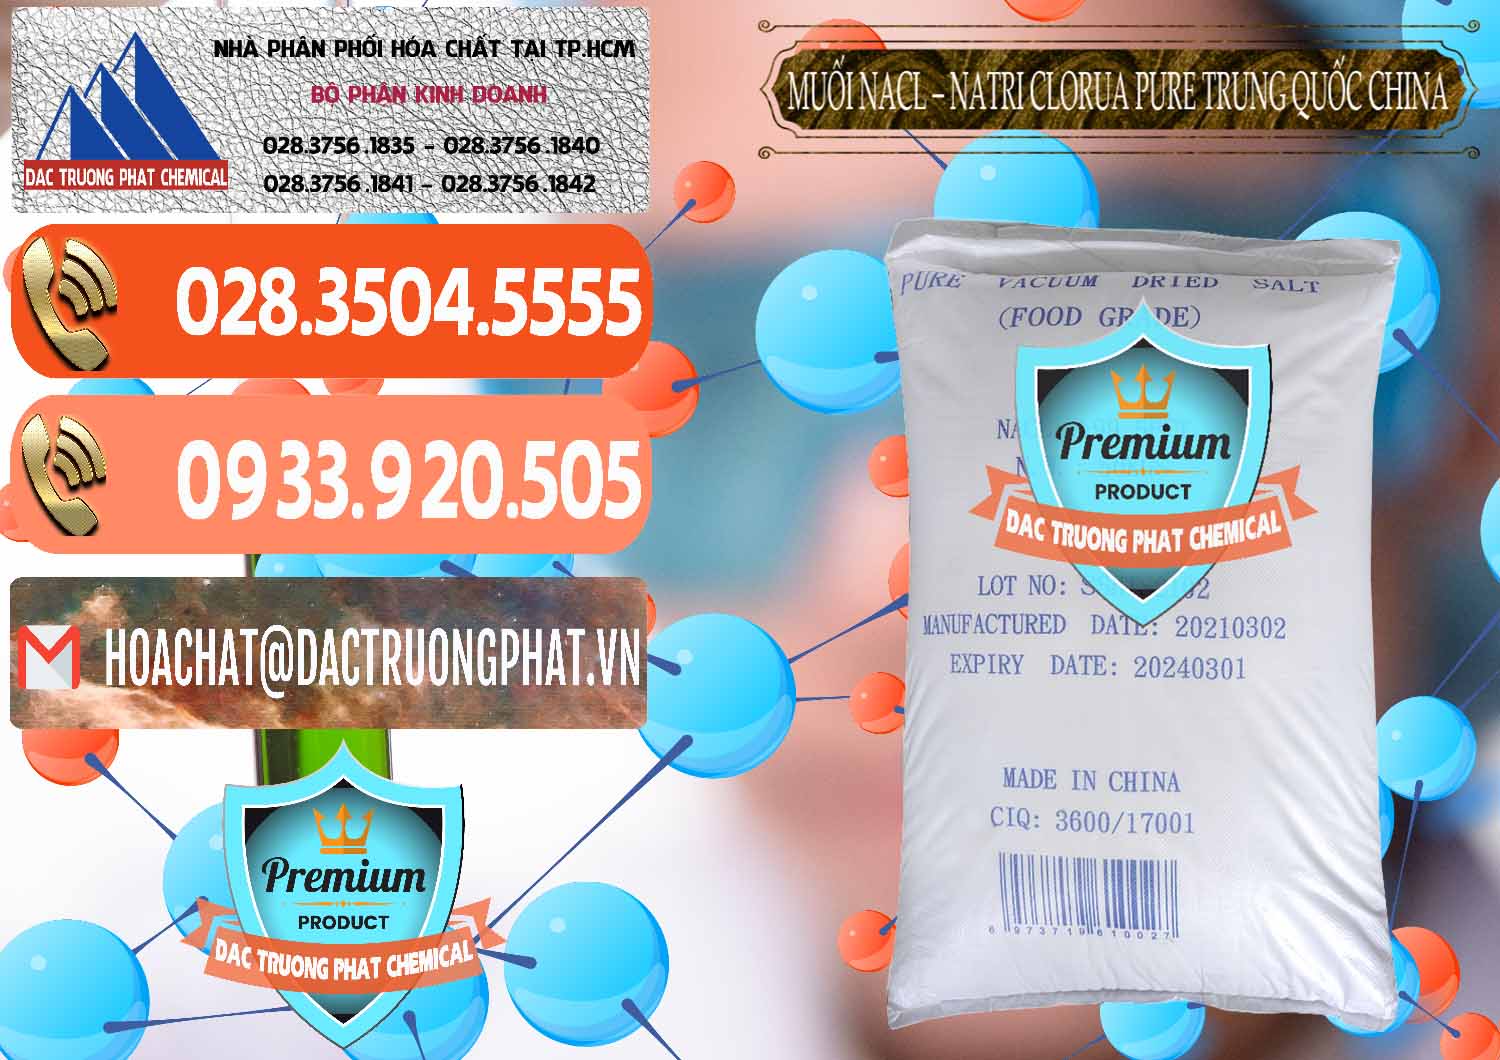 Nhập khẩu & bán Muối NaCL – Sodium Chloride Pure Trung Quốc China - 0230 - Công ty chuyên cung ứng _ phân phối hóa chất tại TP.HCM - hoachatmientay.com